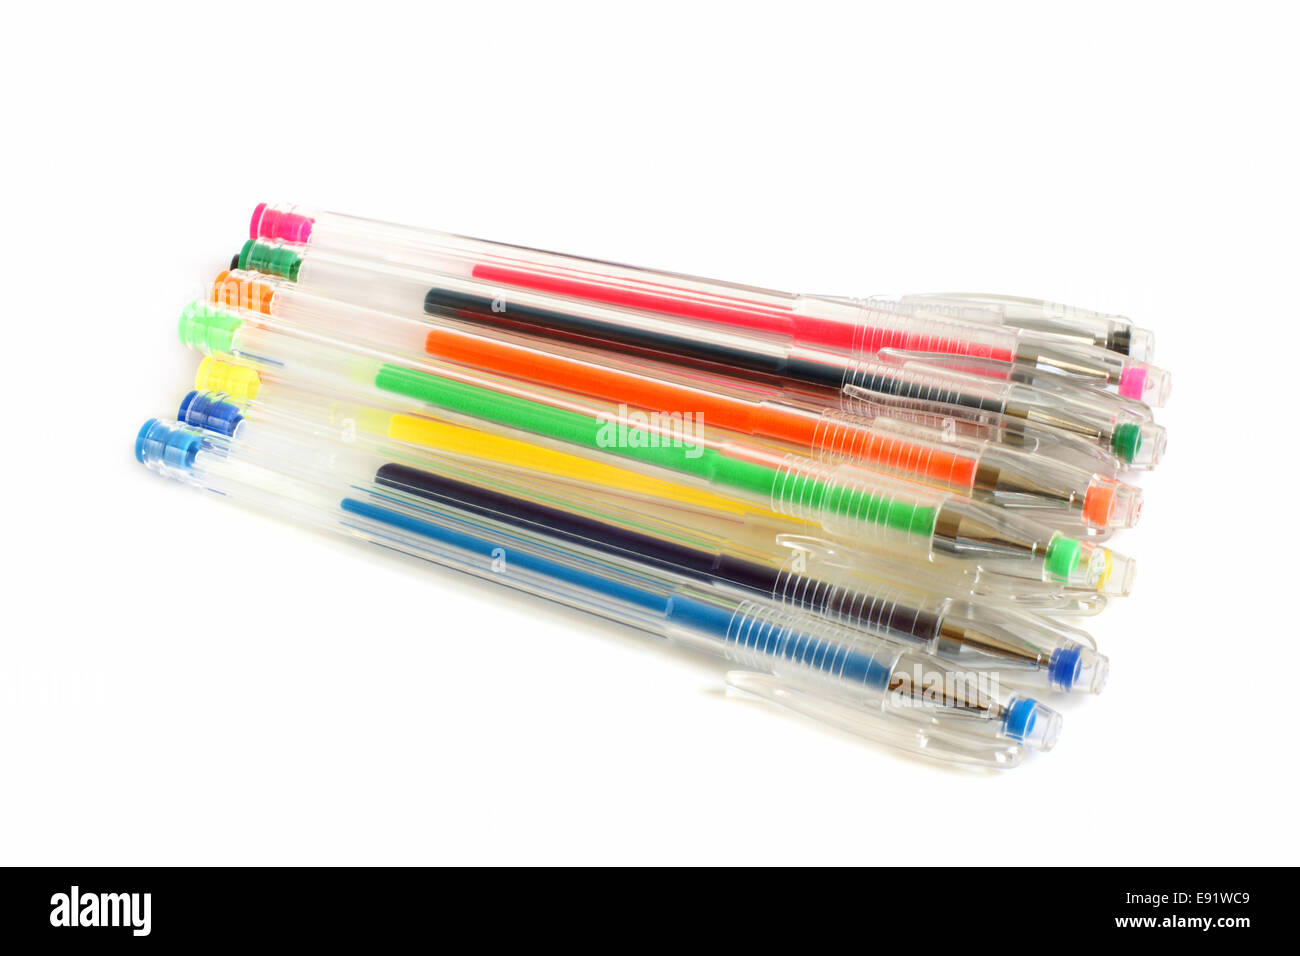 https://c8.alamy.com/comp/E91WC9/set-of-colored-gel-pens-E91WC9.jpg